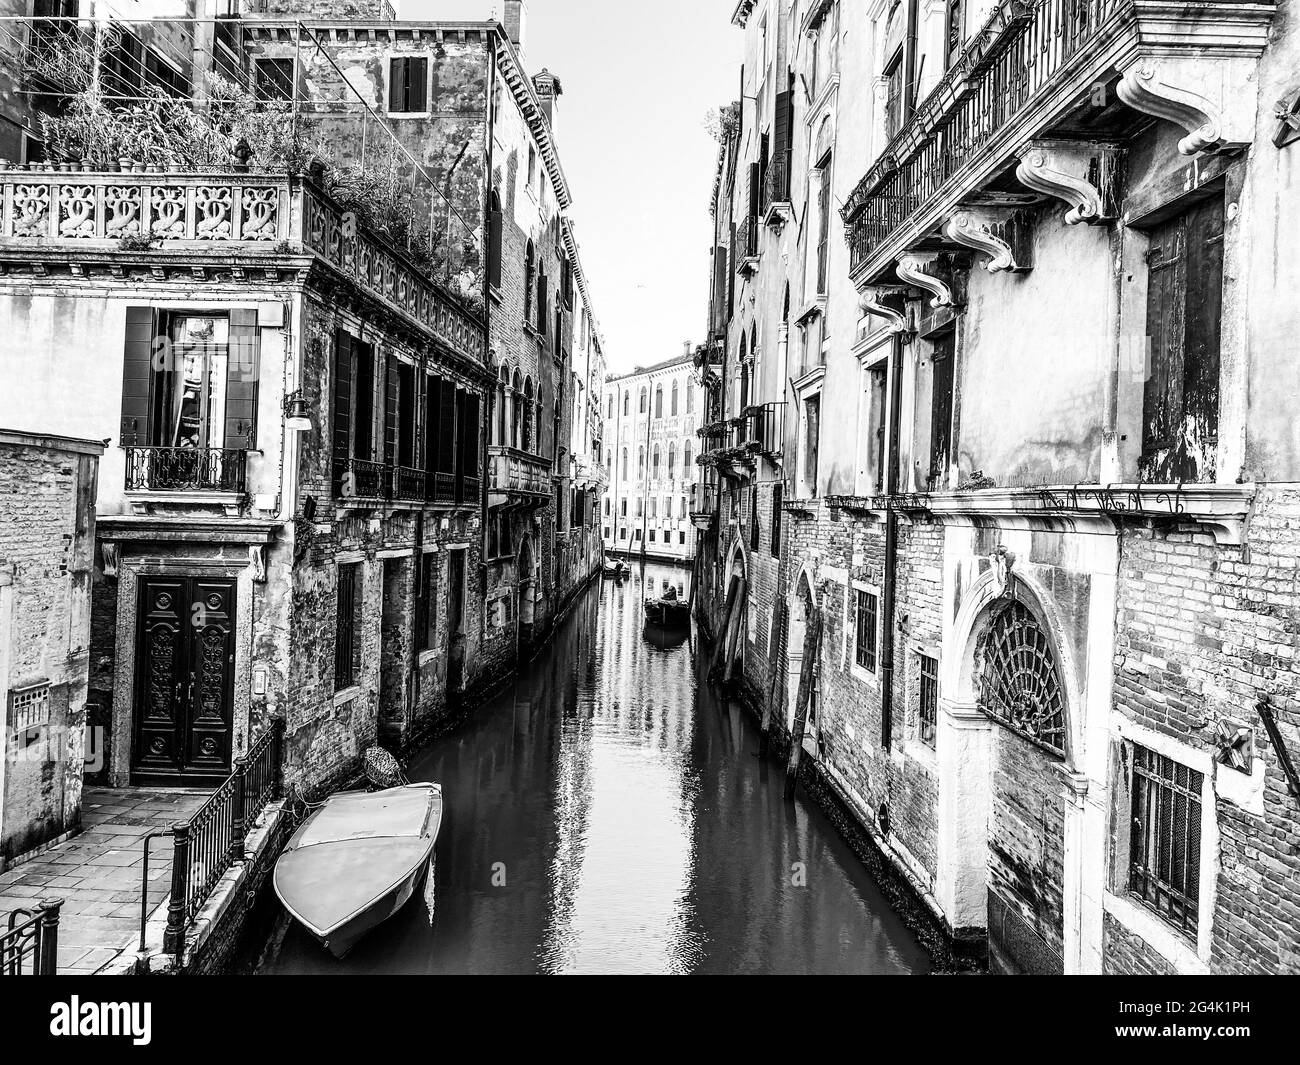 Petit bateau sur une petite rue de canal à Venise avec de belles maisons colorées, Italie Banque D'Images